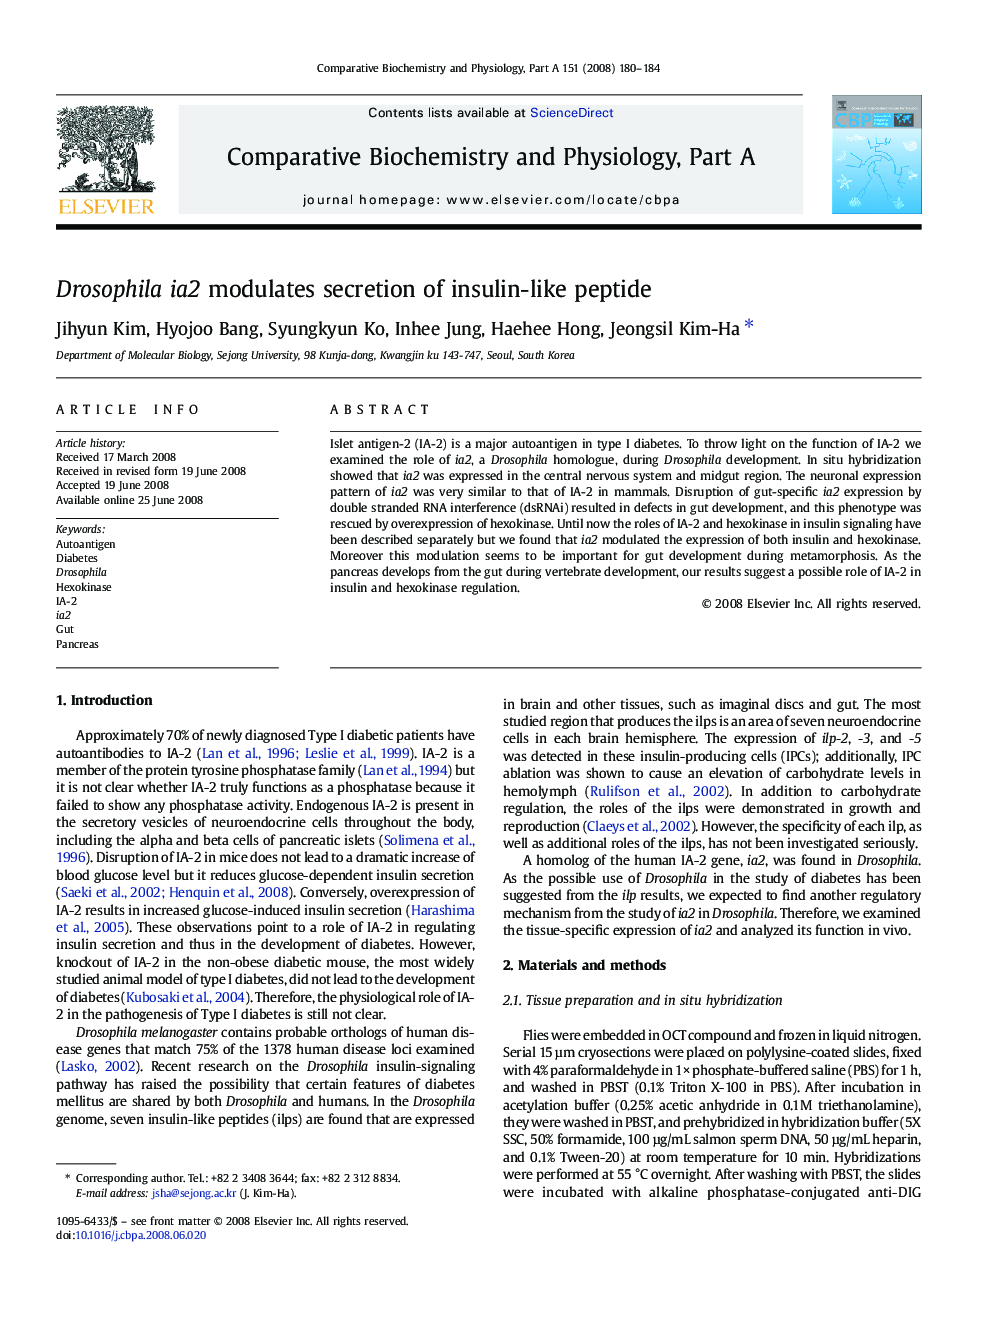 Drosophila ia2 modulates secretion of insulin-like peptide